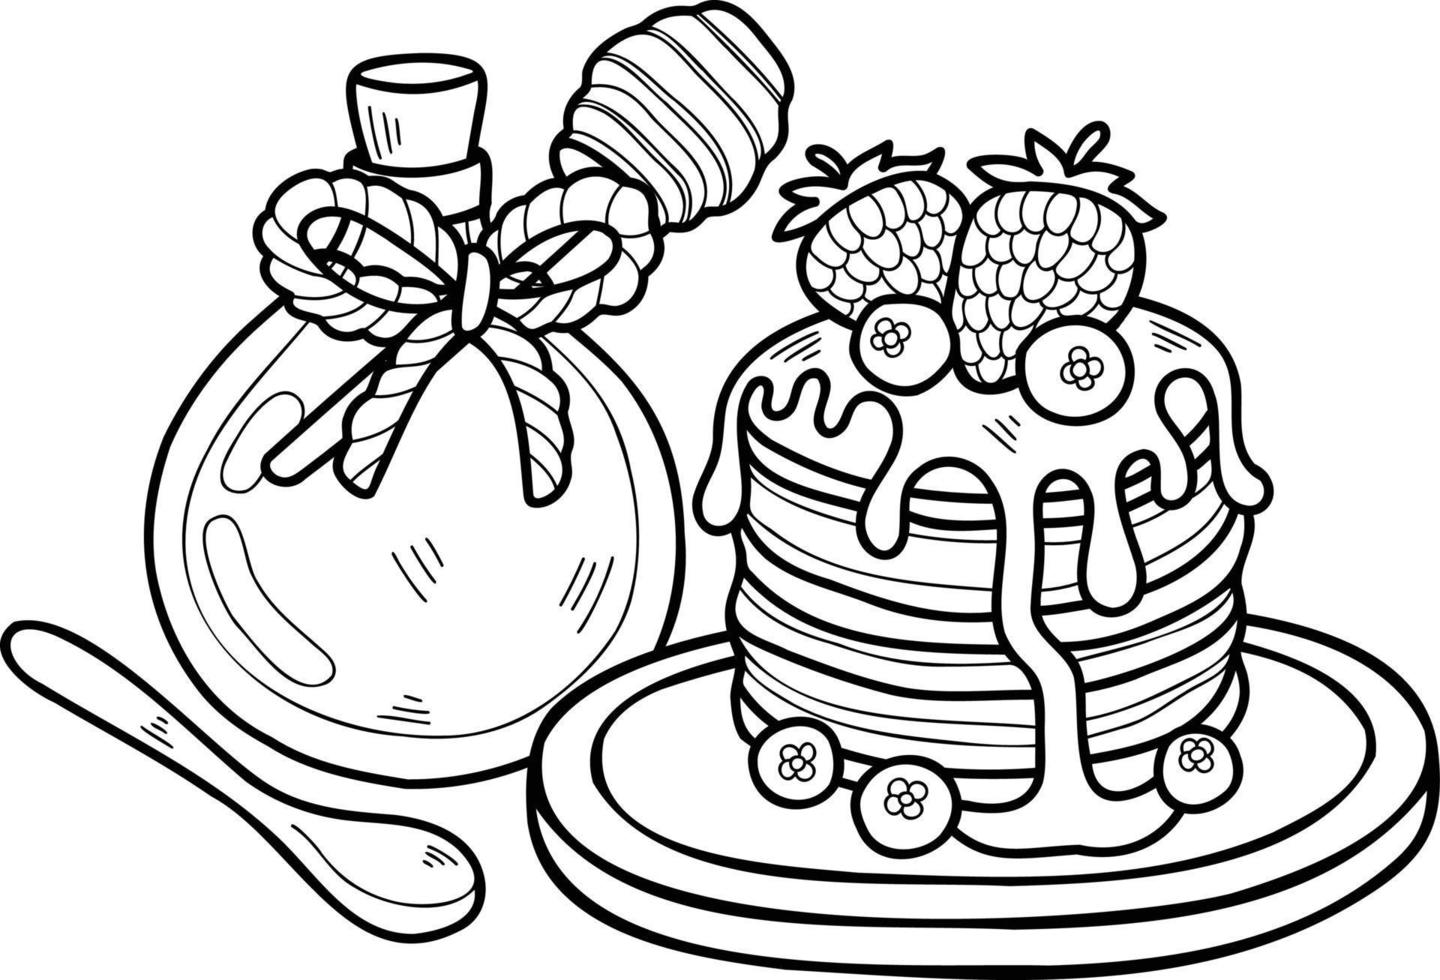 panqueques dibujados a mano con ilustración de miel y fresas vector